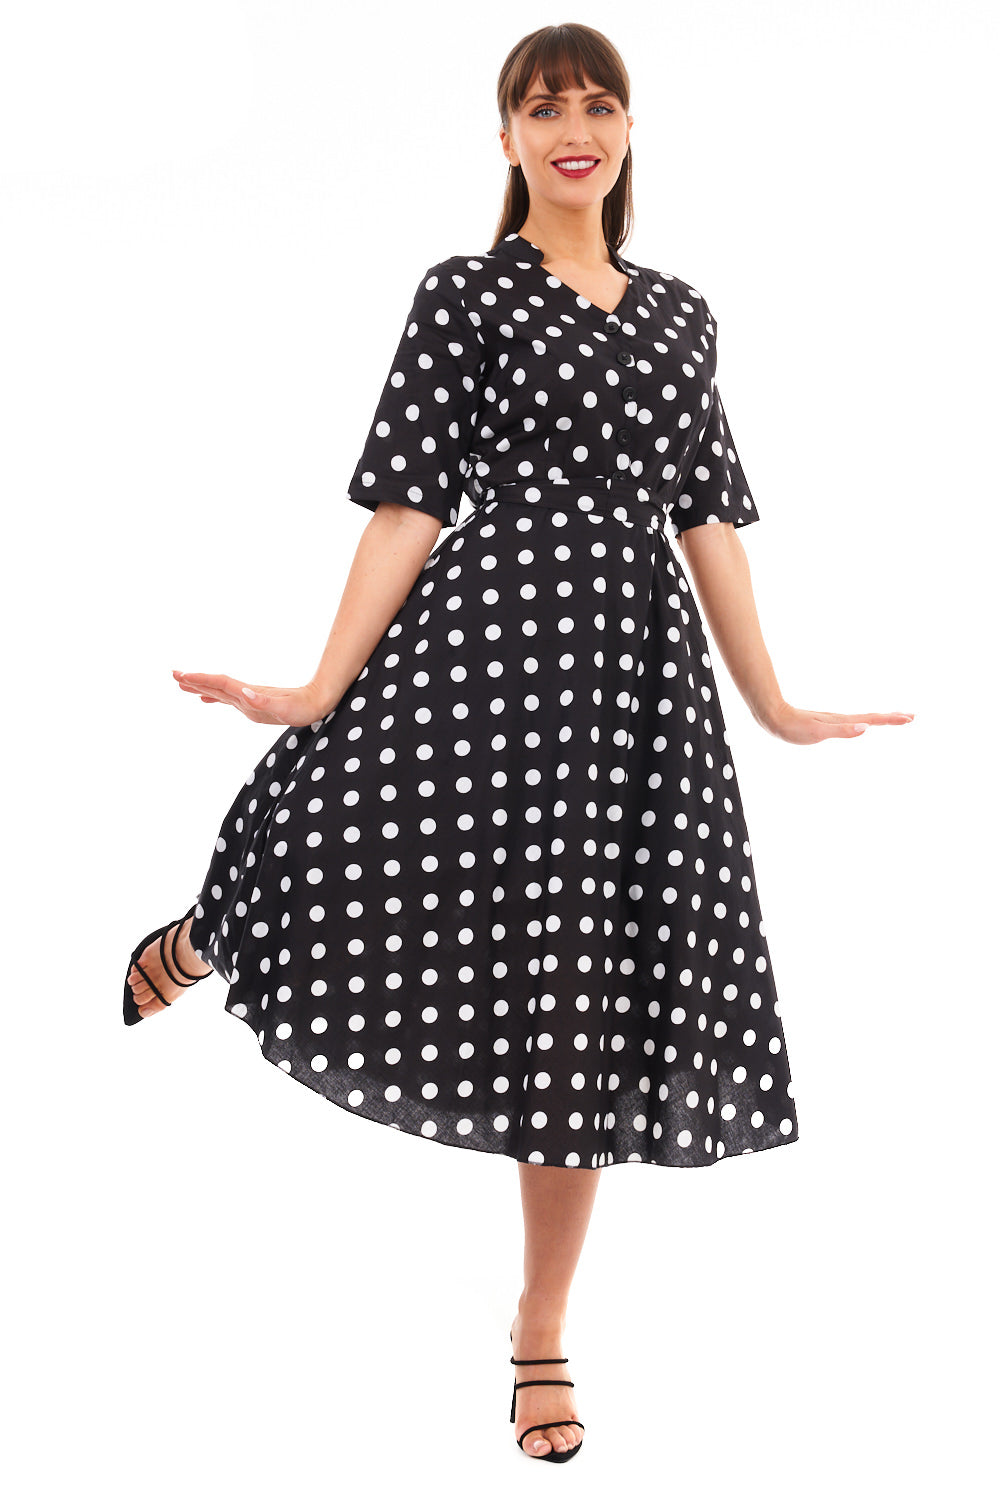 Retro Vintage 1940's Polka Dot Shirt Dress in Black